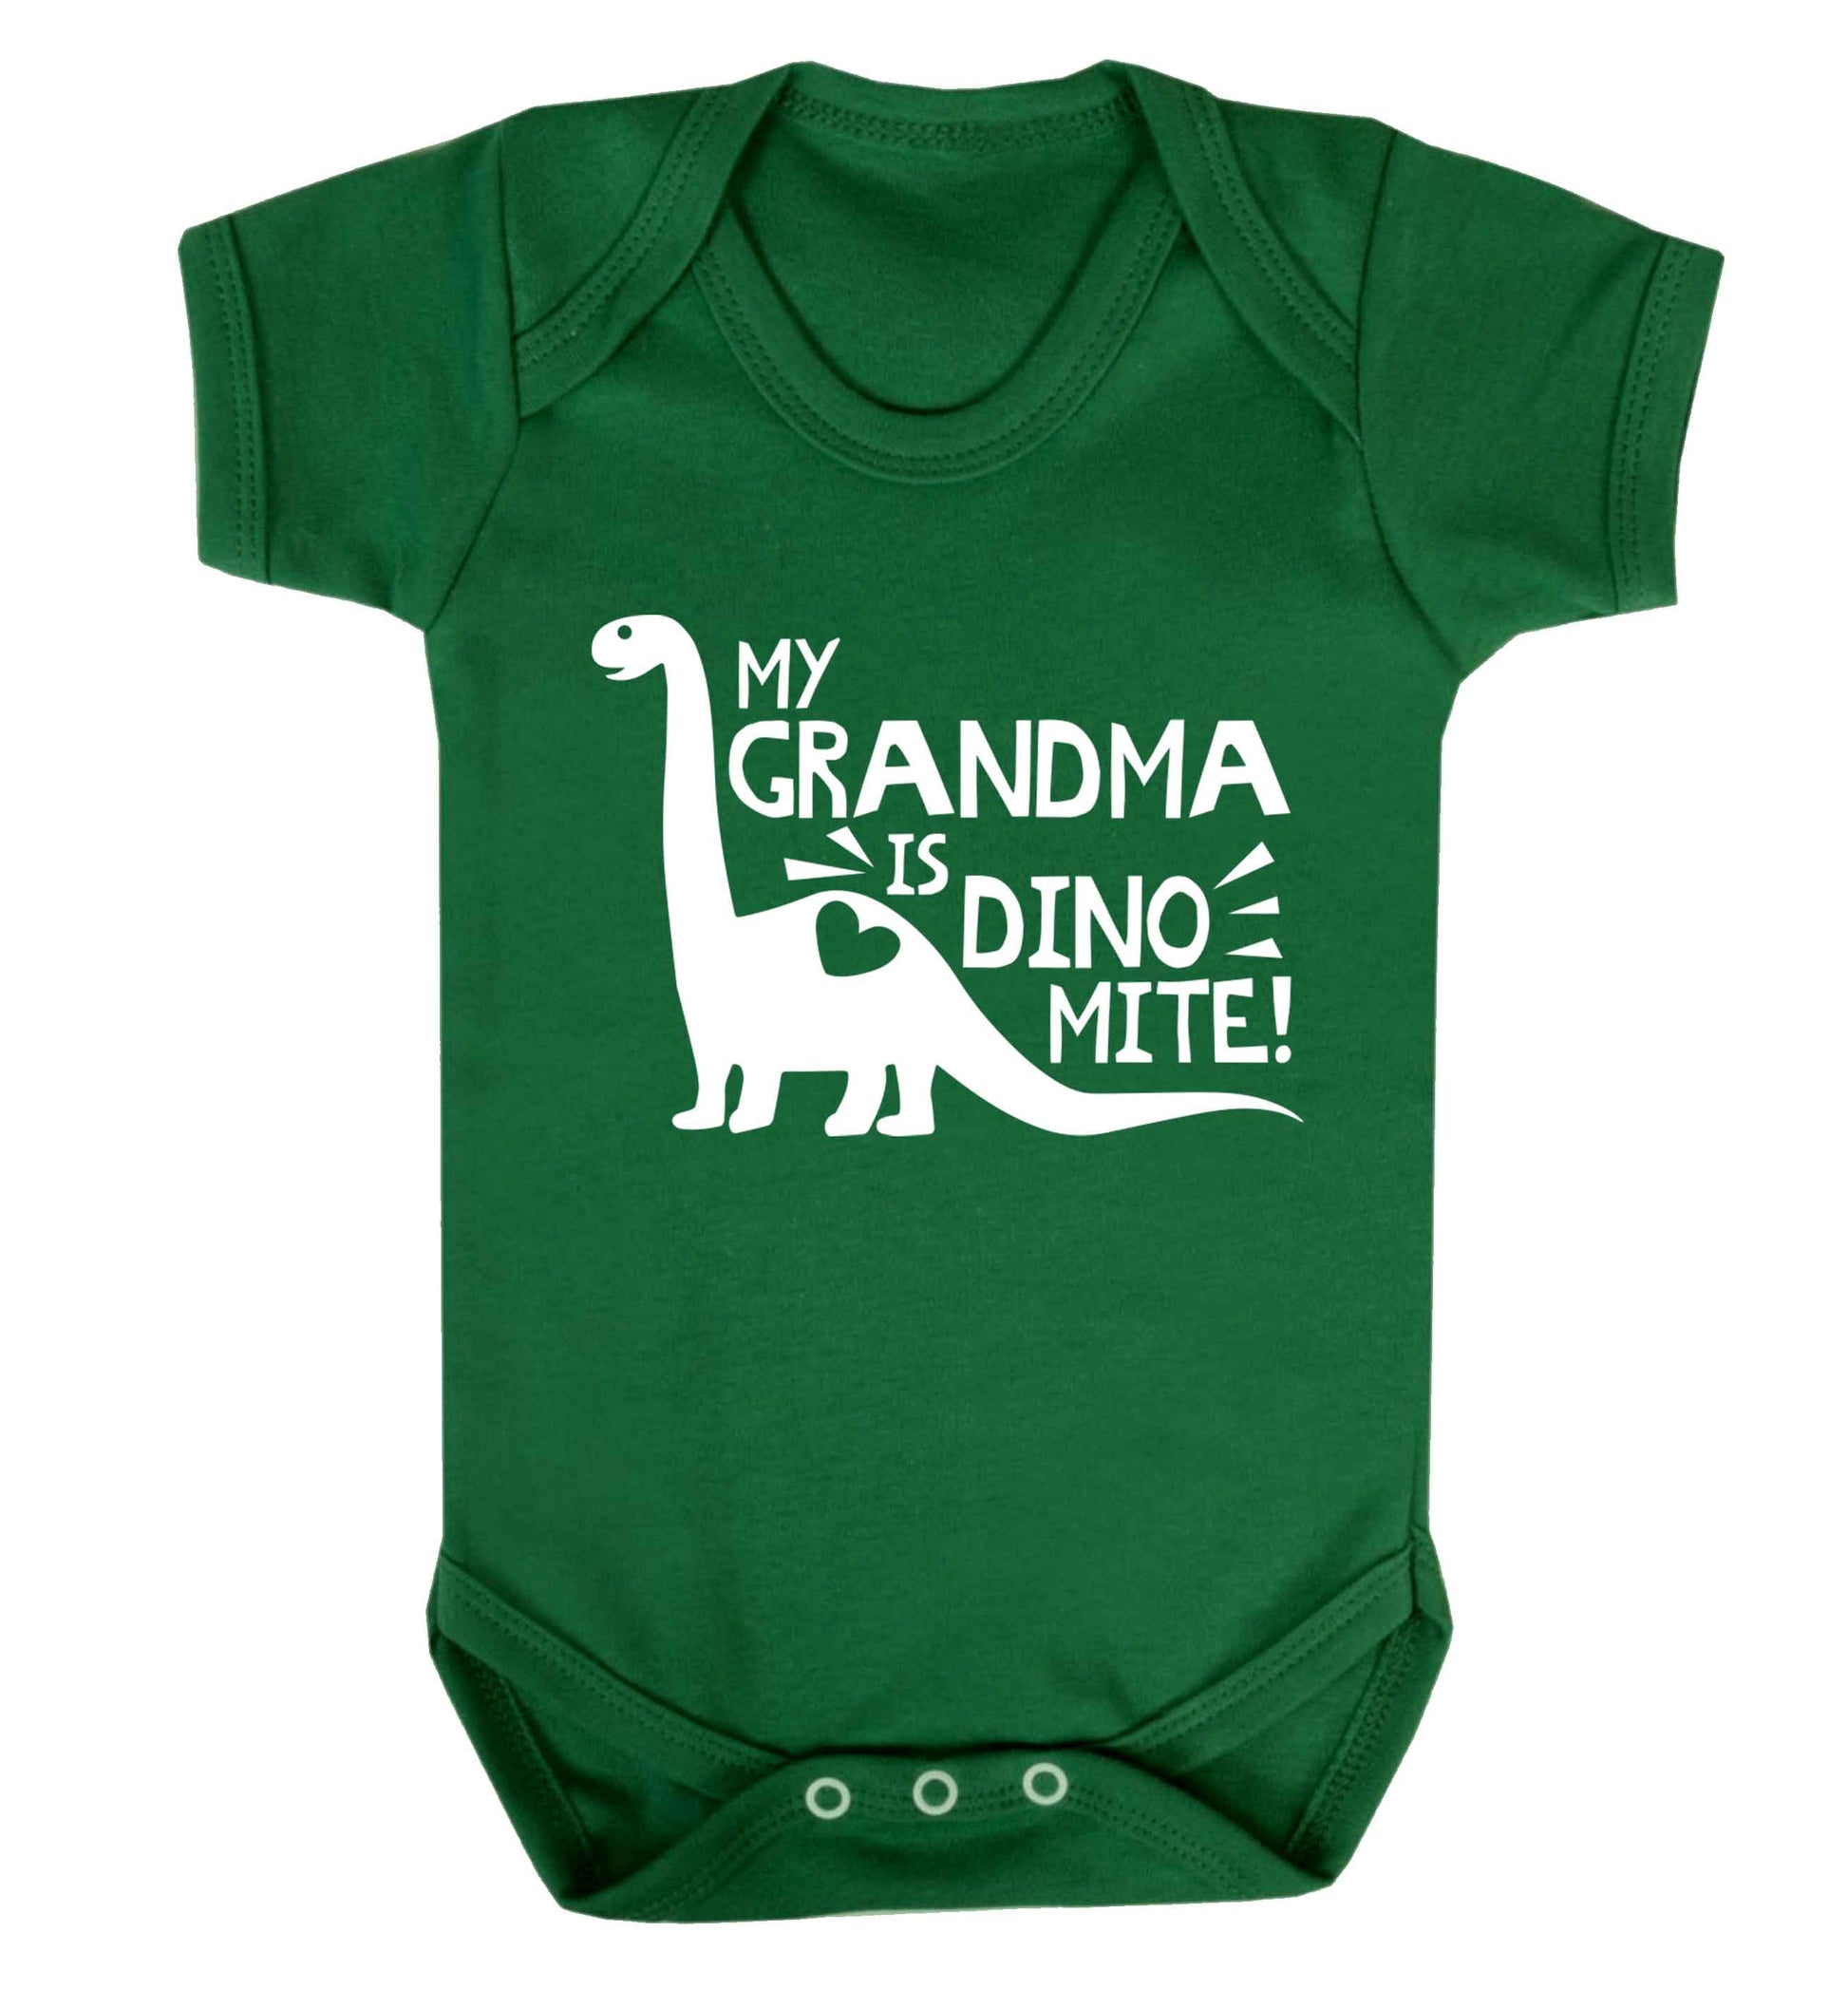 My grandma is dinomite! Baby Vest green 18-24 months